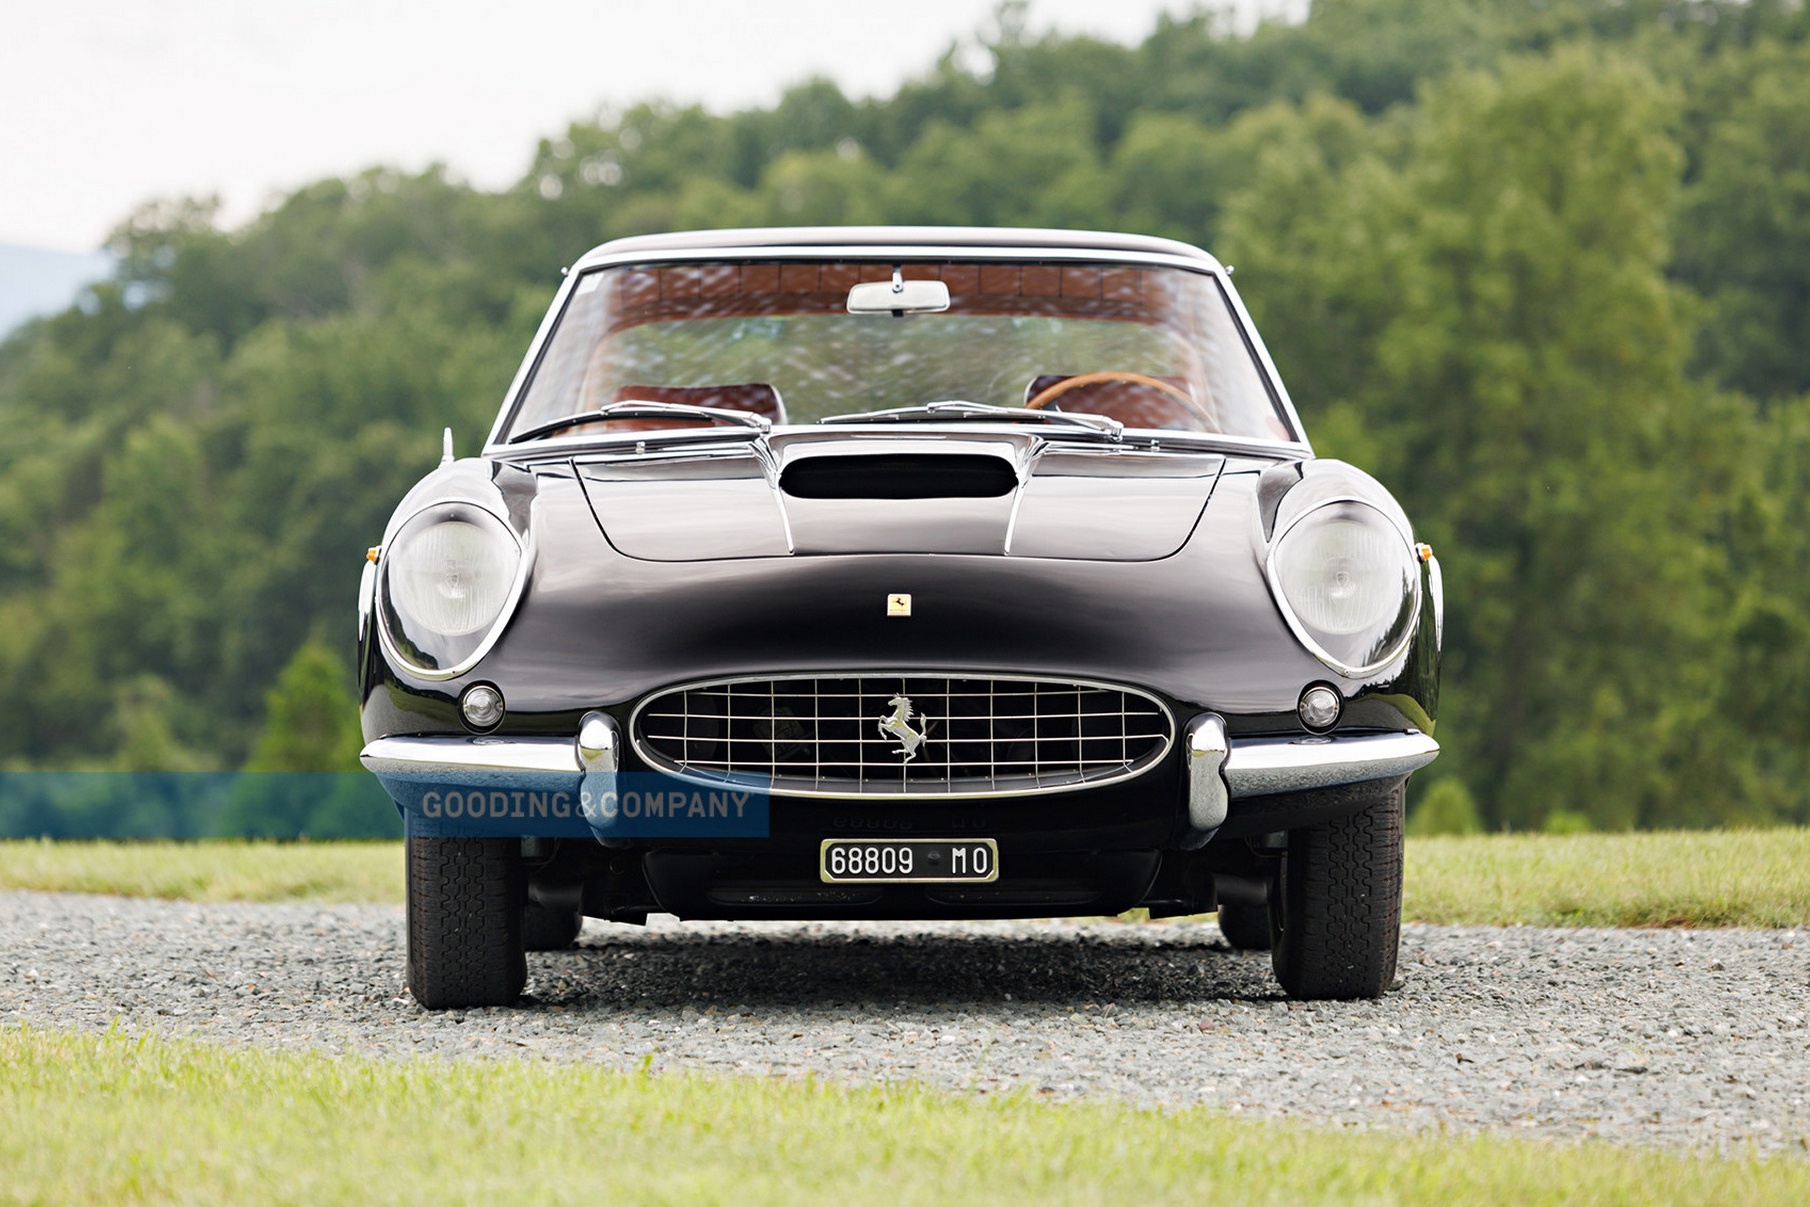 Chiếc Ferrari độc bản được rao bán - ảnh 3